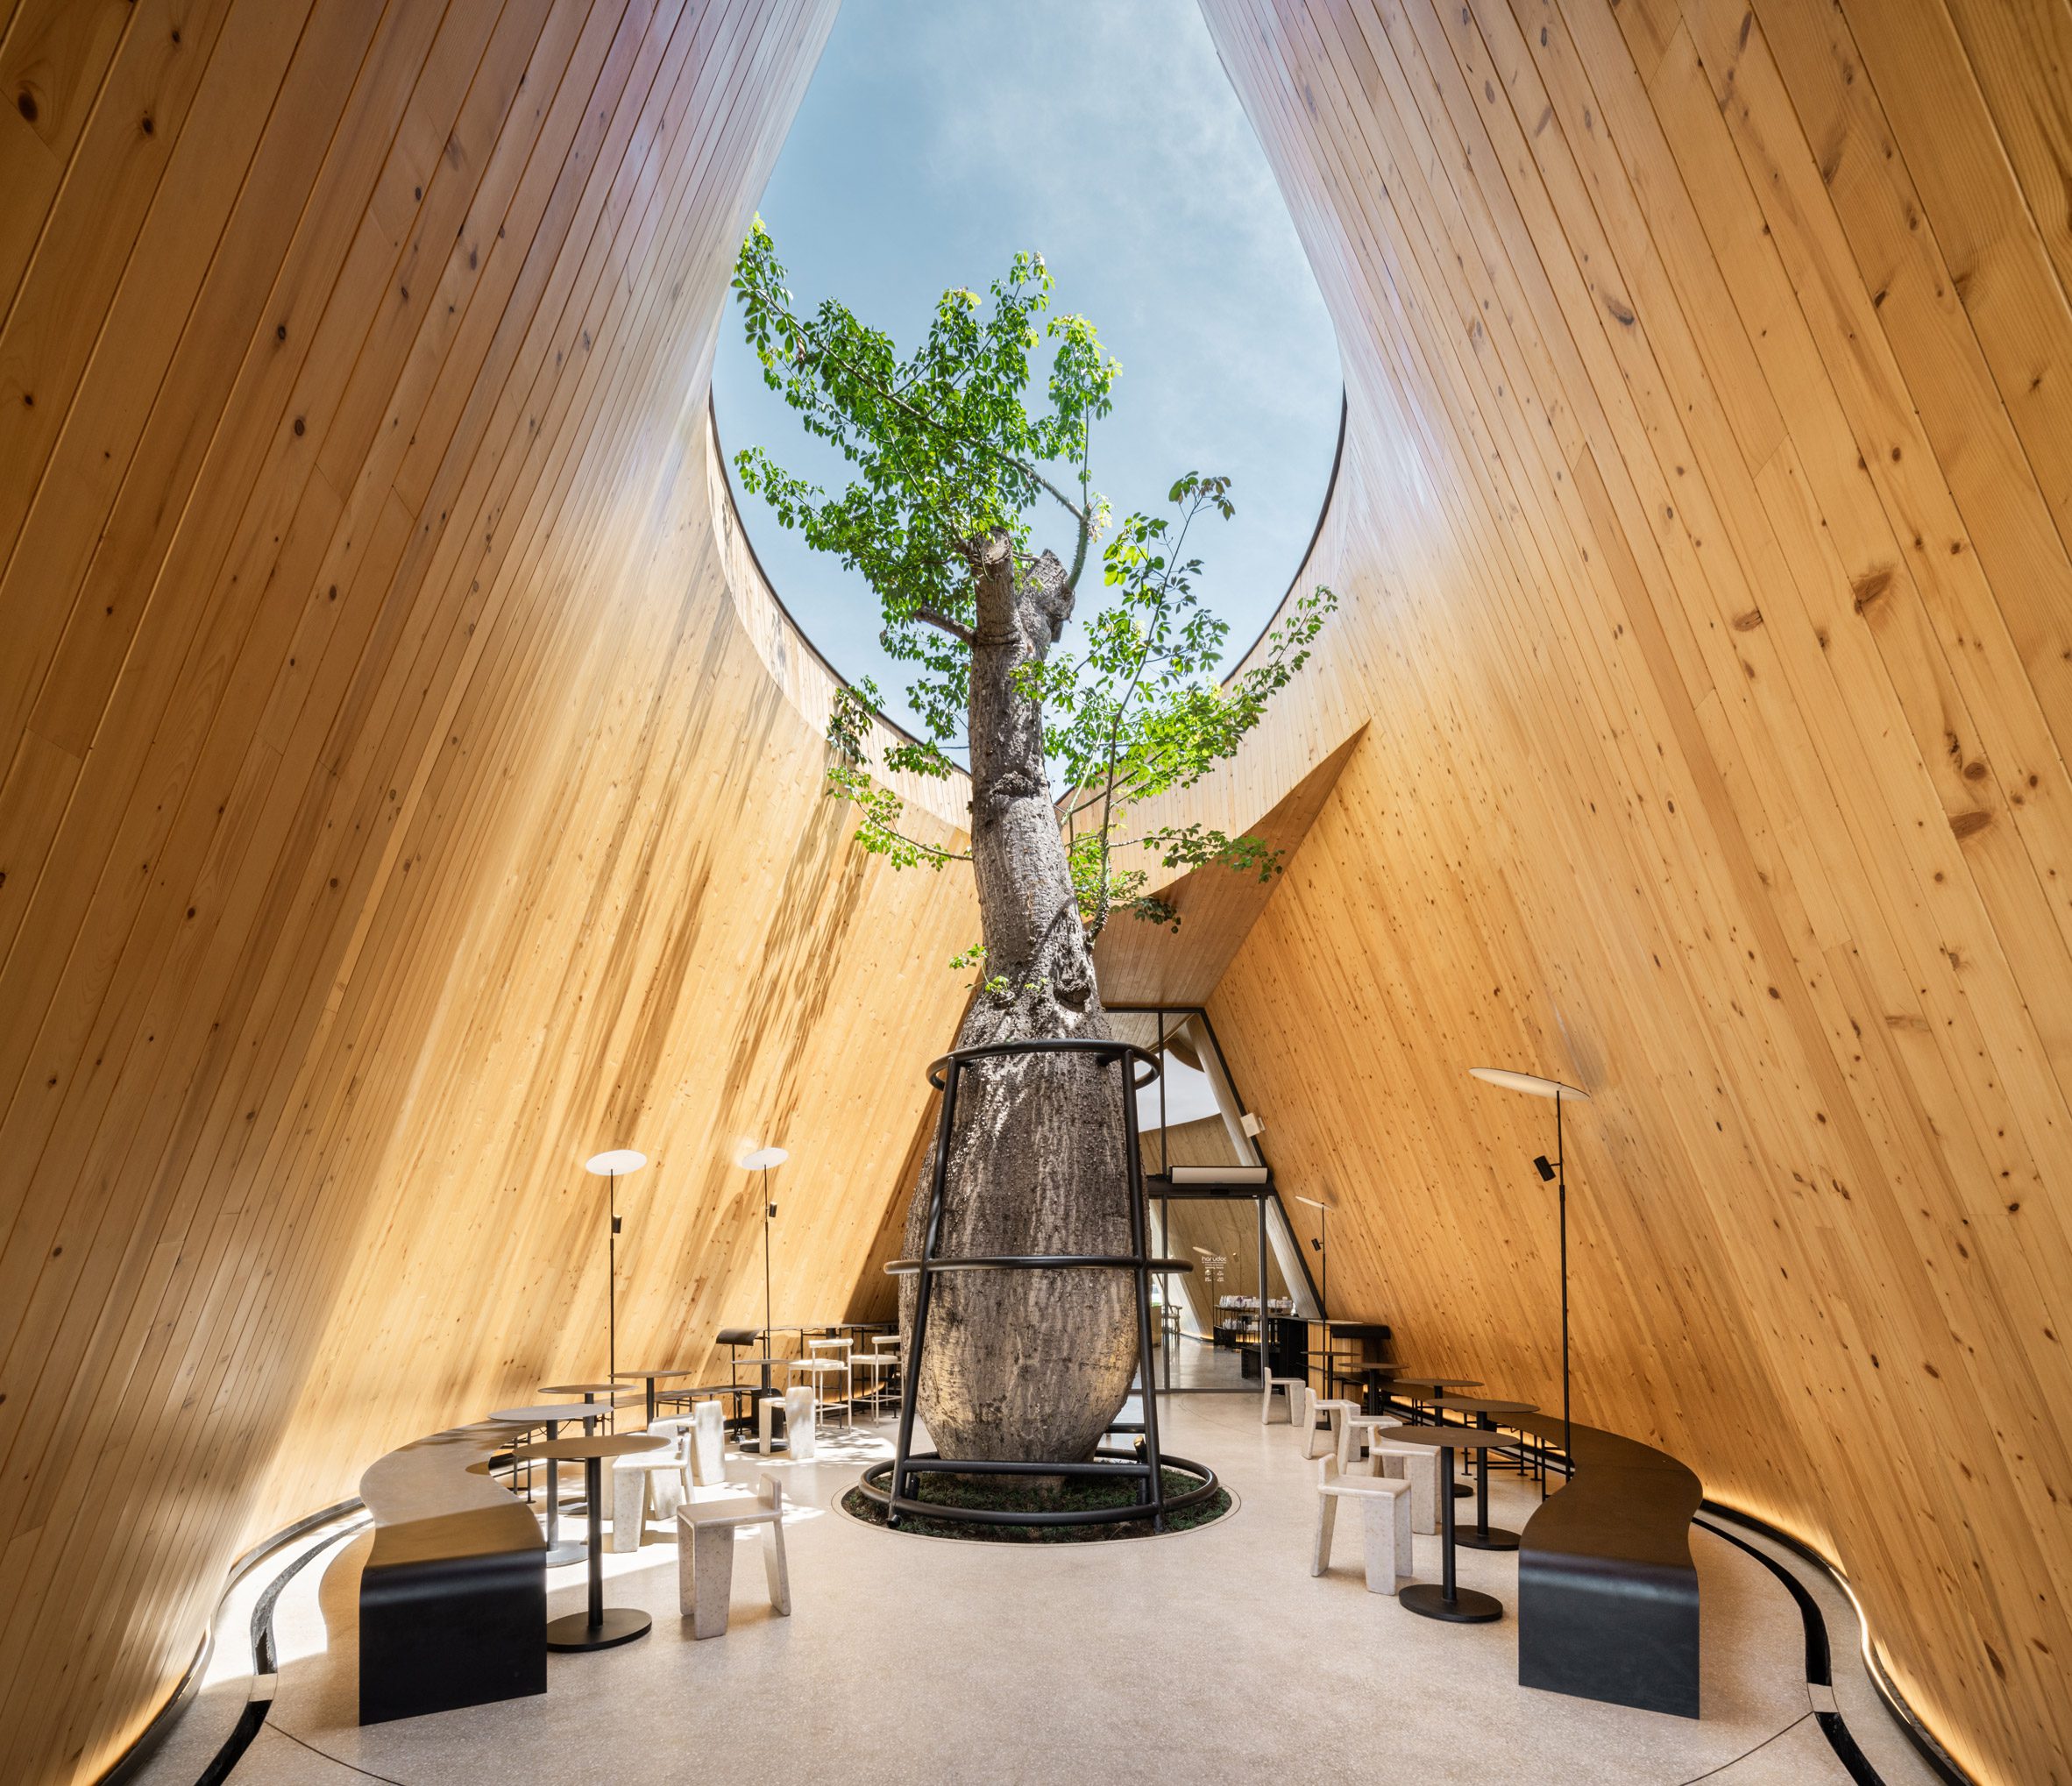 baoab tree inside a cafe 